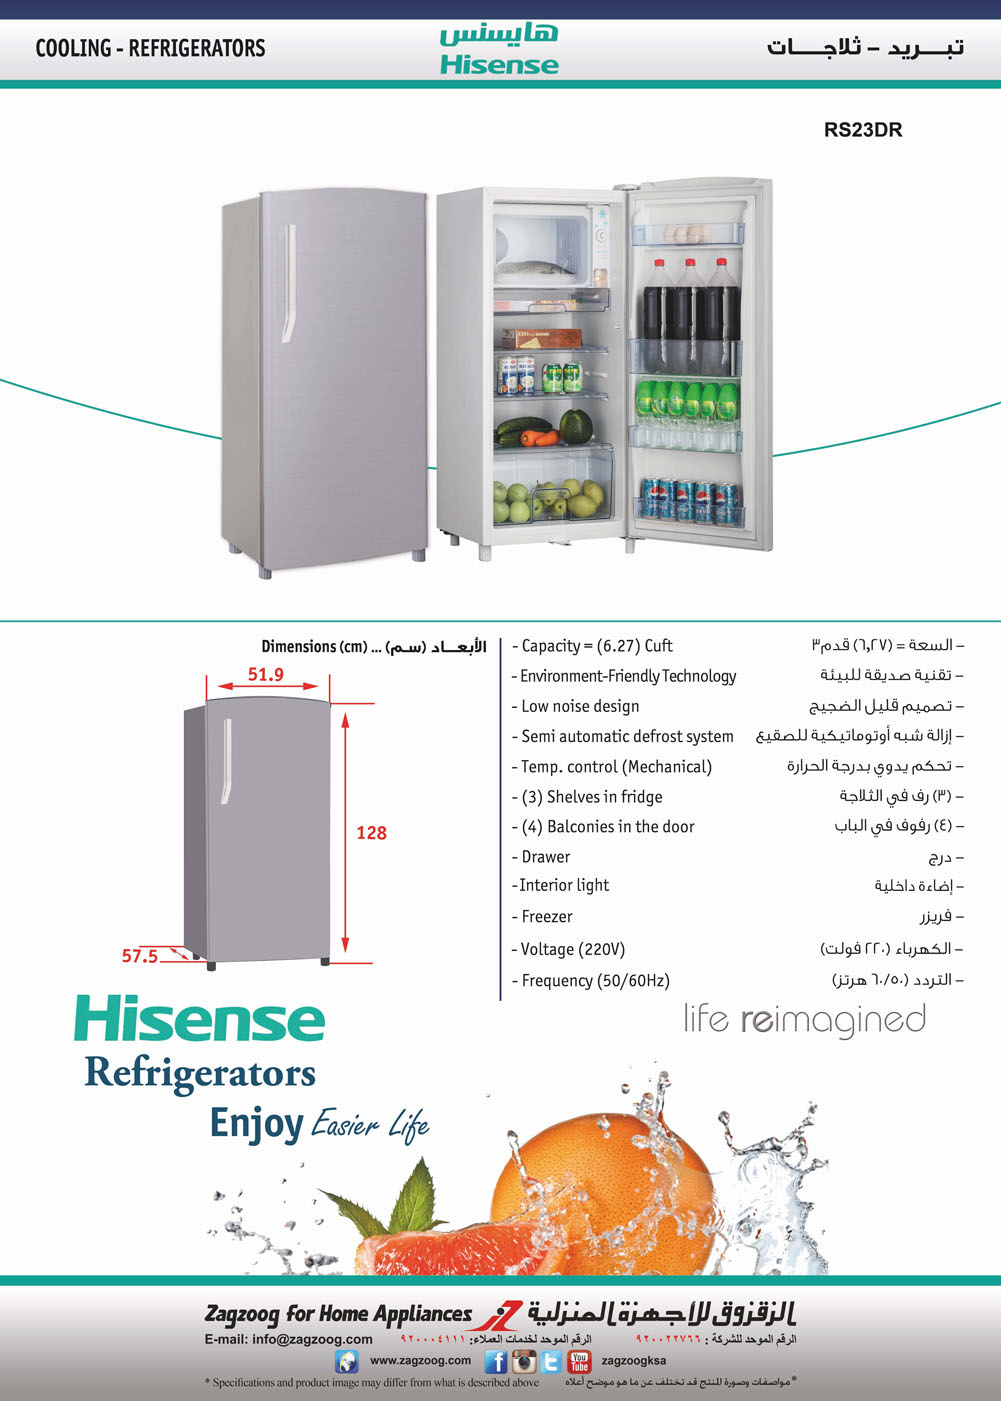 Hisense Ref (6.27) Cuft, 50/60Hz, Silver